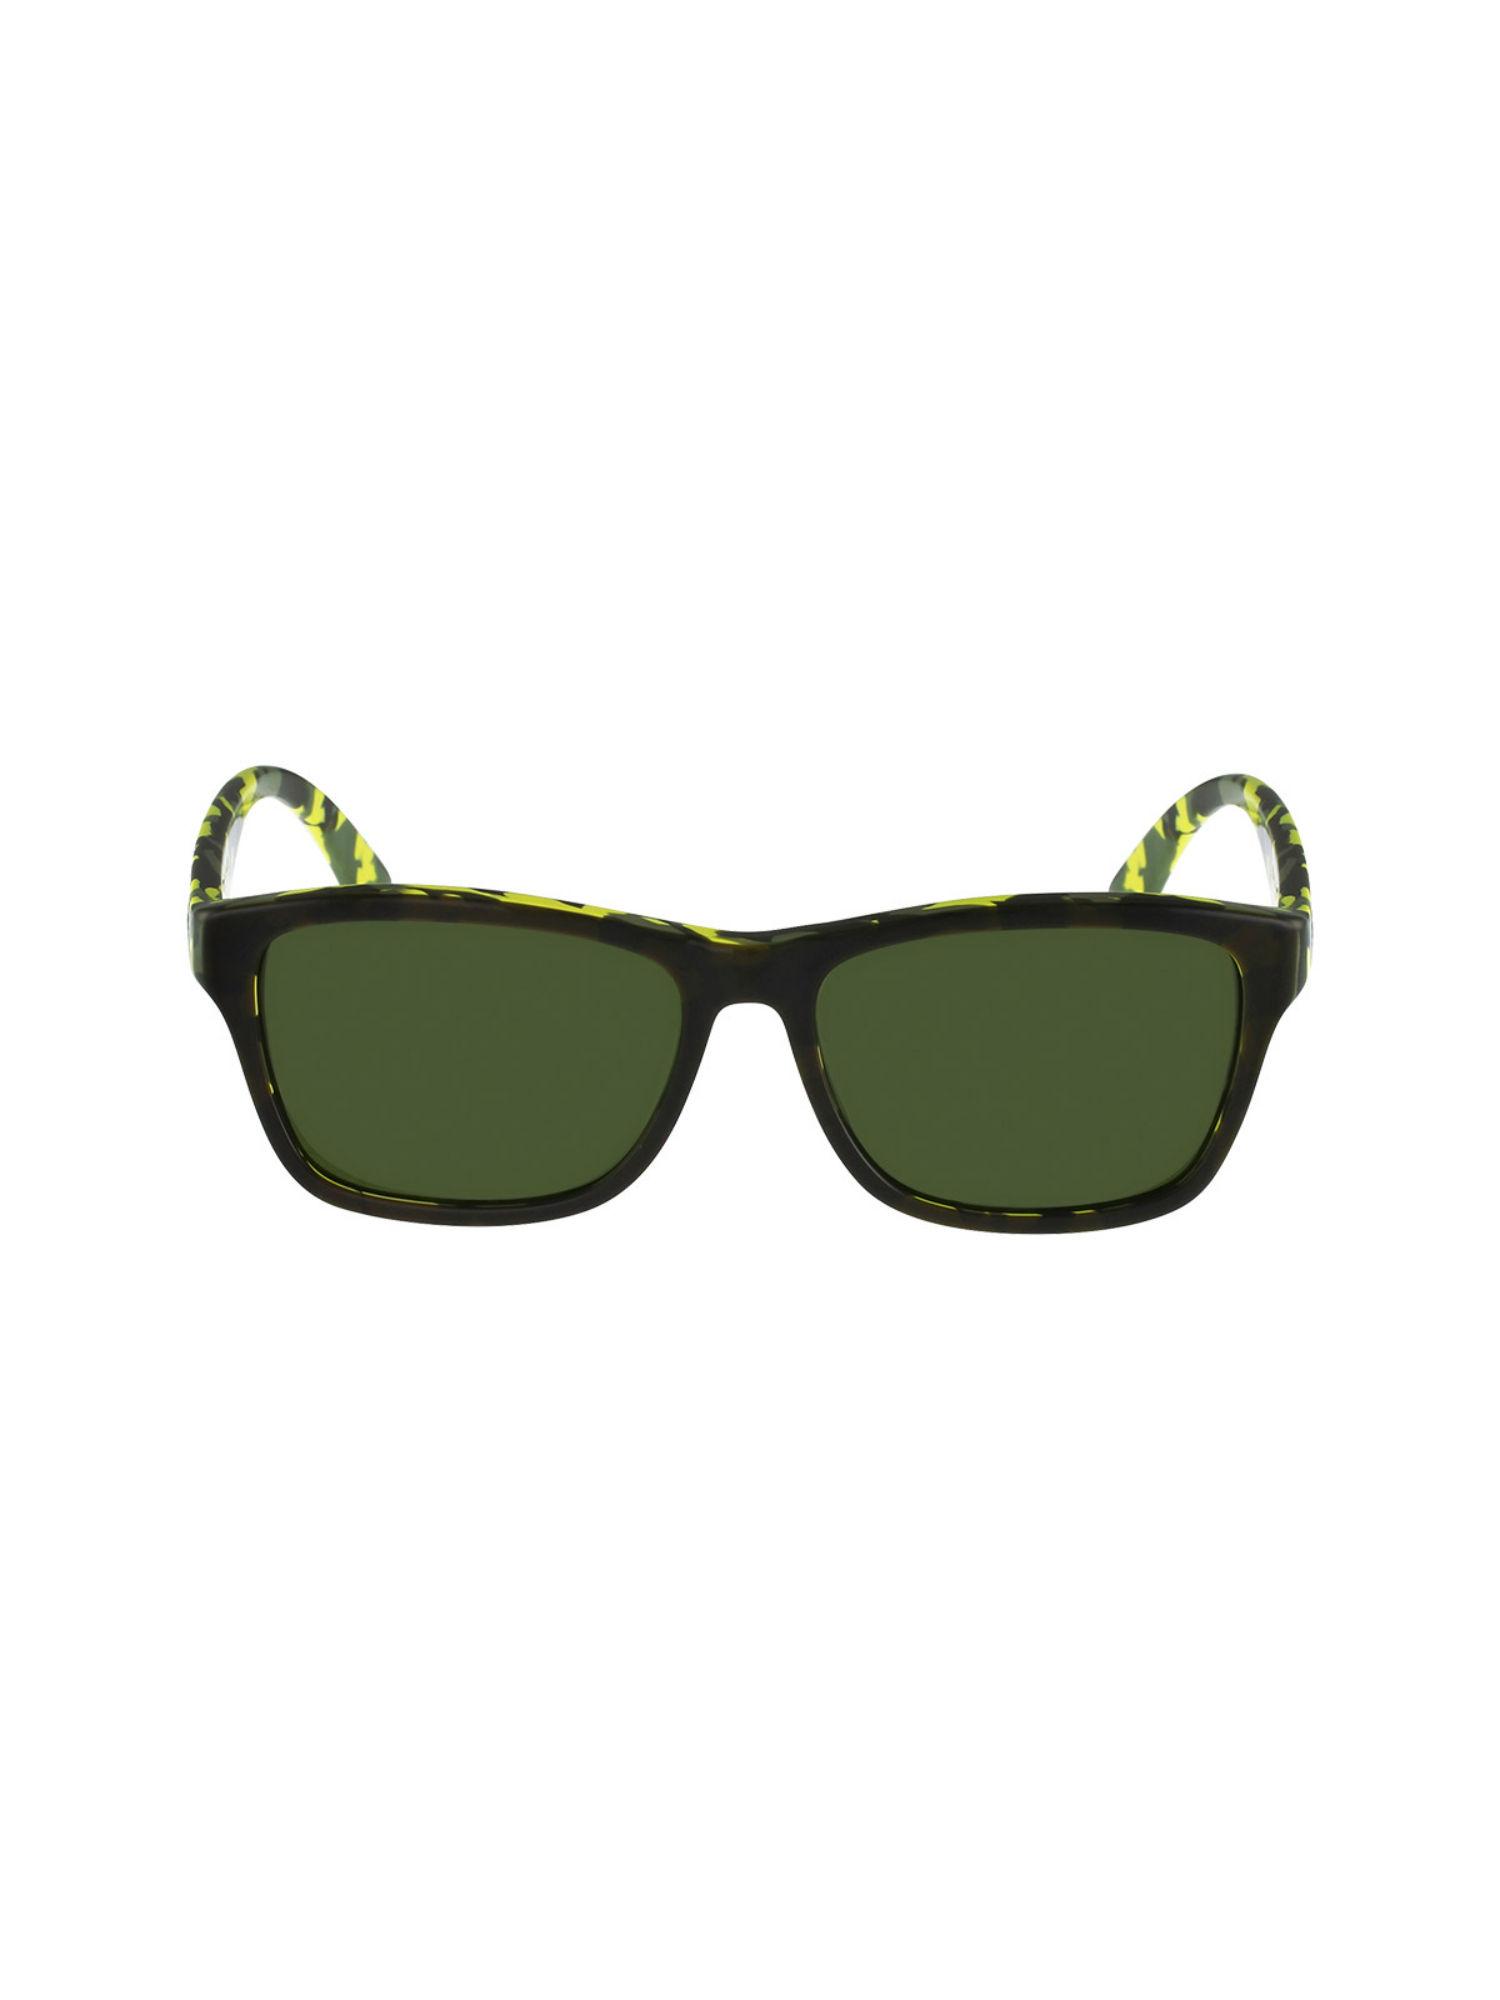 wayfarer sunglasses with green lens for unisex